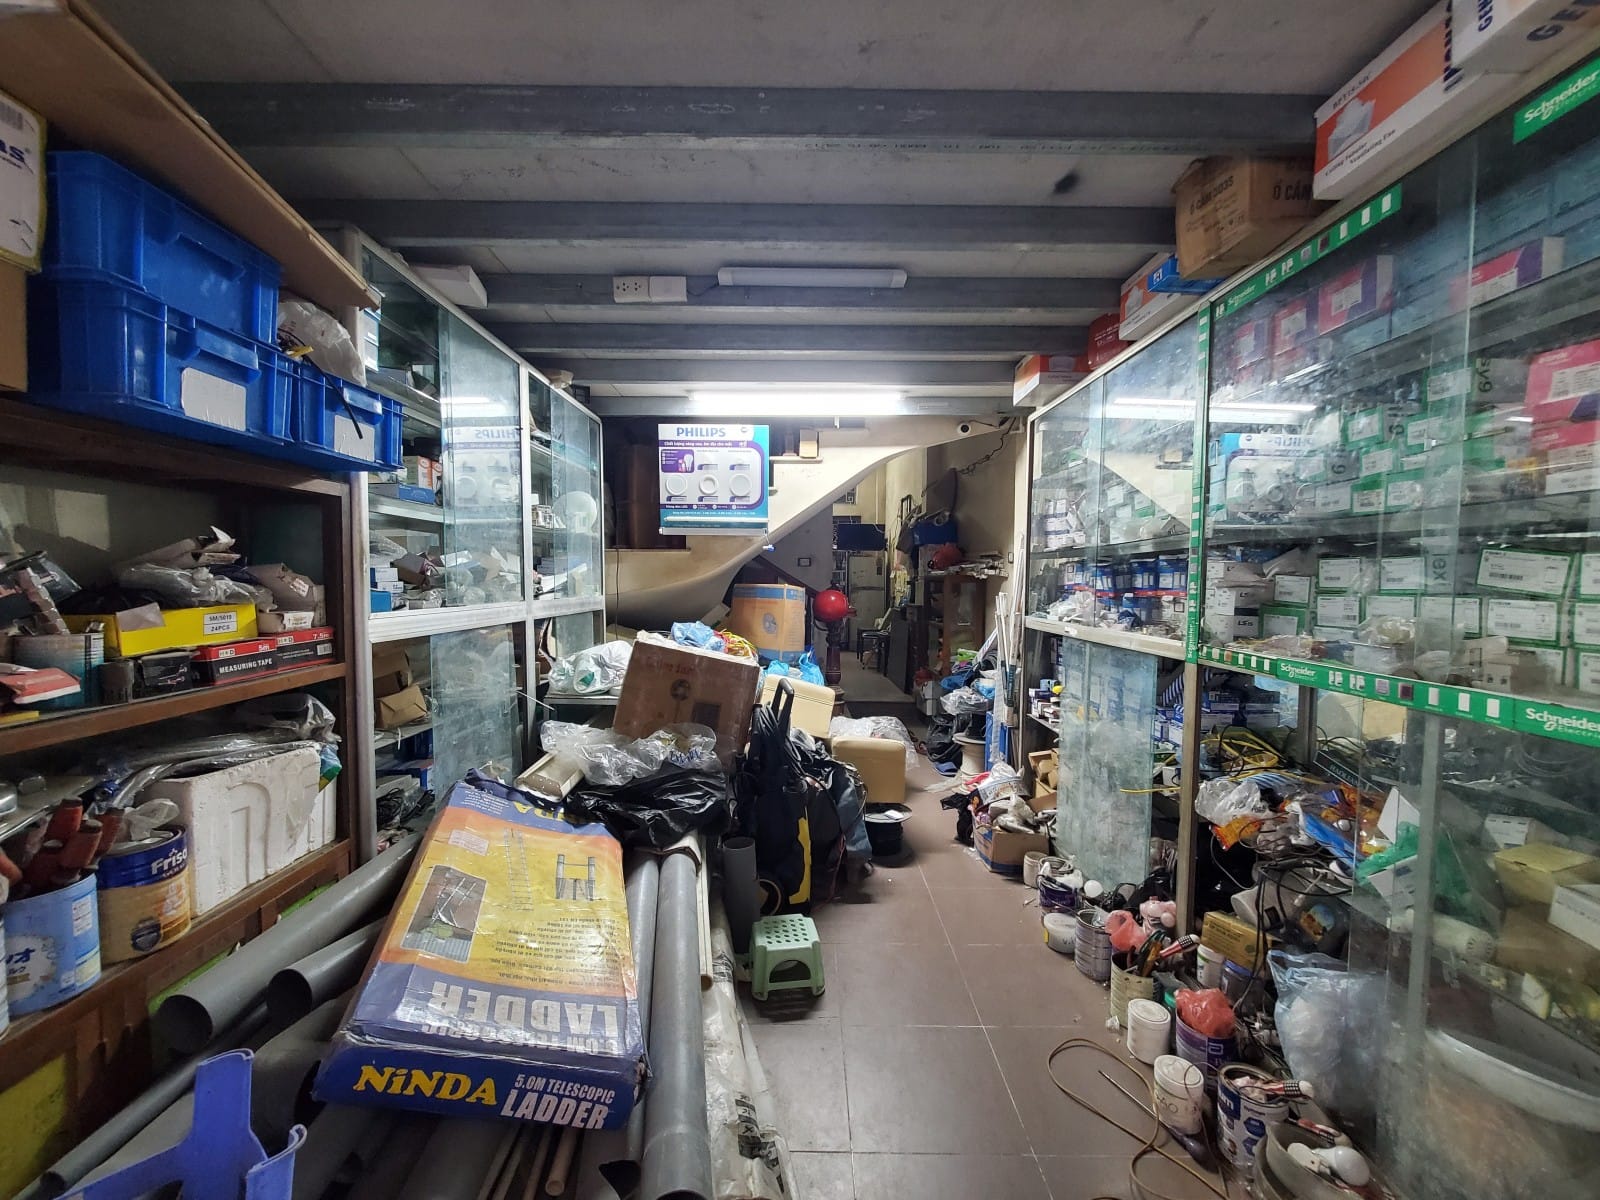 Bán nhà 2 mặt ngõ ở Kim Giang, thừa hưởng khách hàng, xe tải đỗ cửa